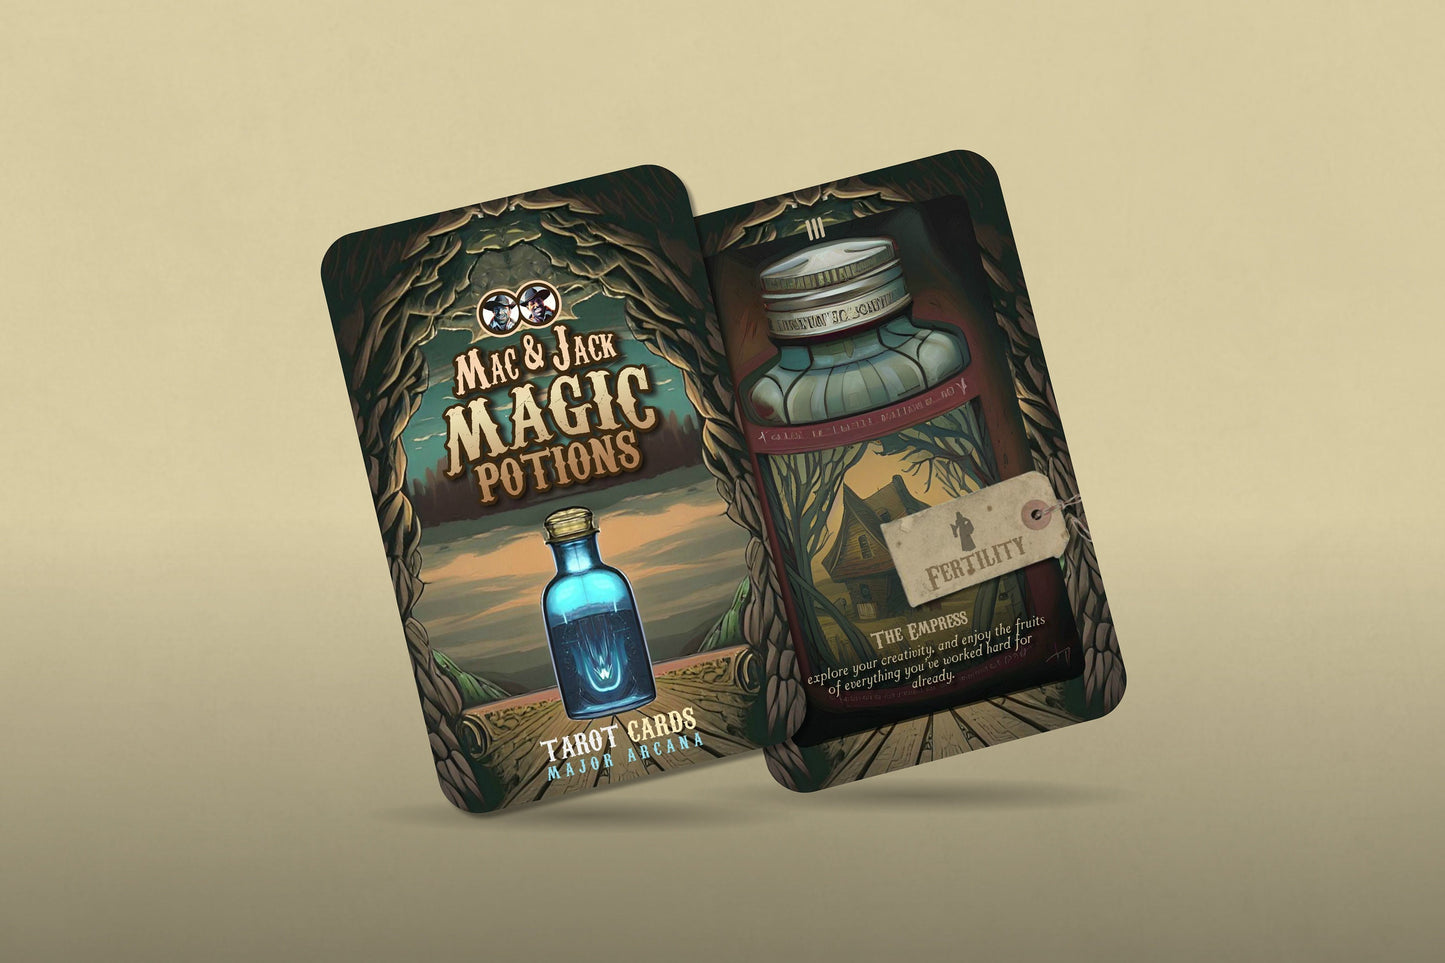 Mac & Jack Magic Potions - Tarot Cards - Major Arcana